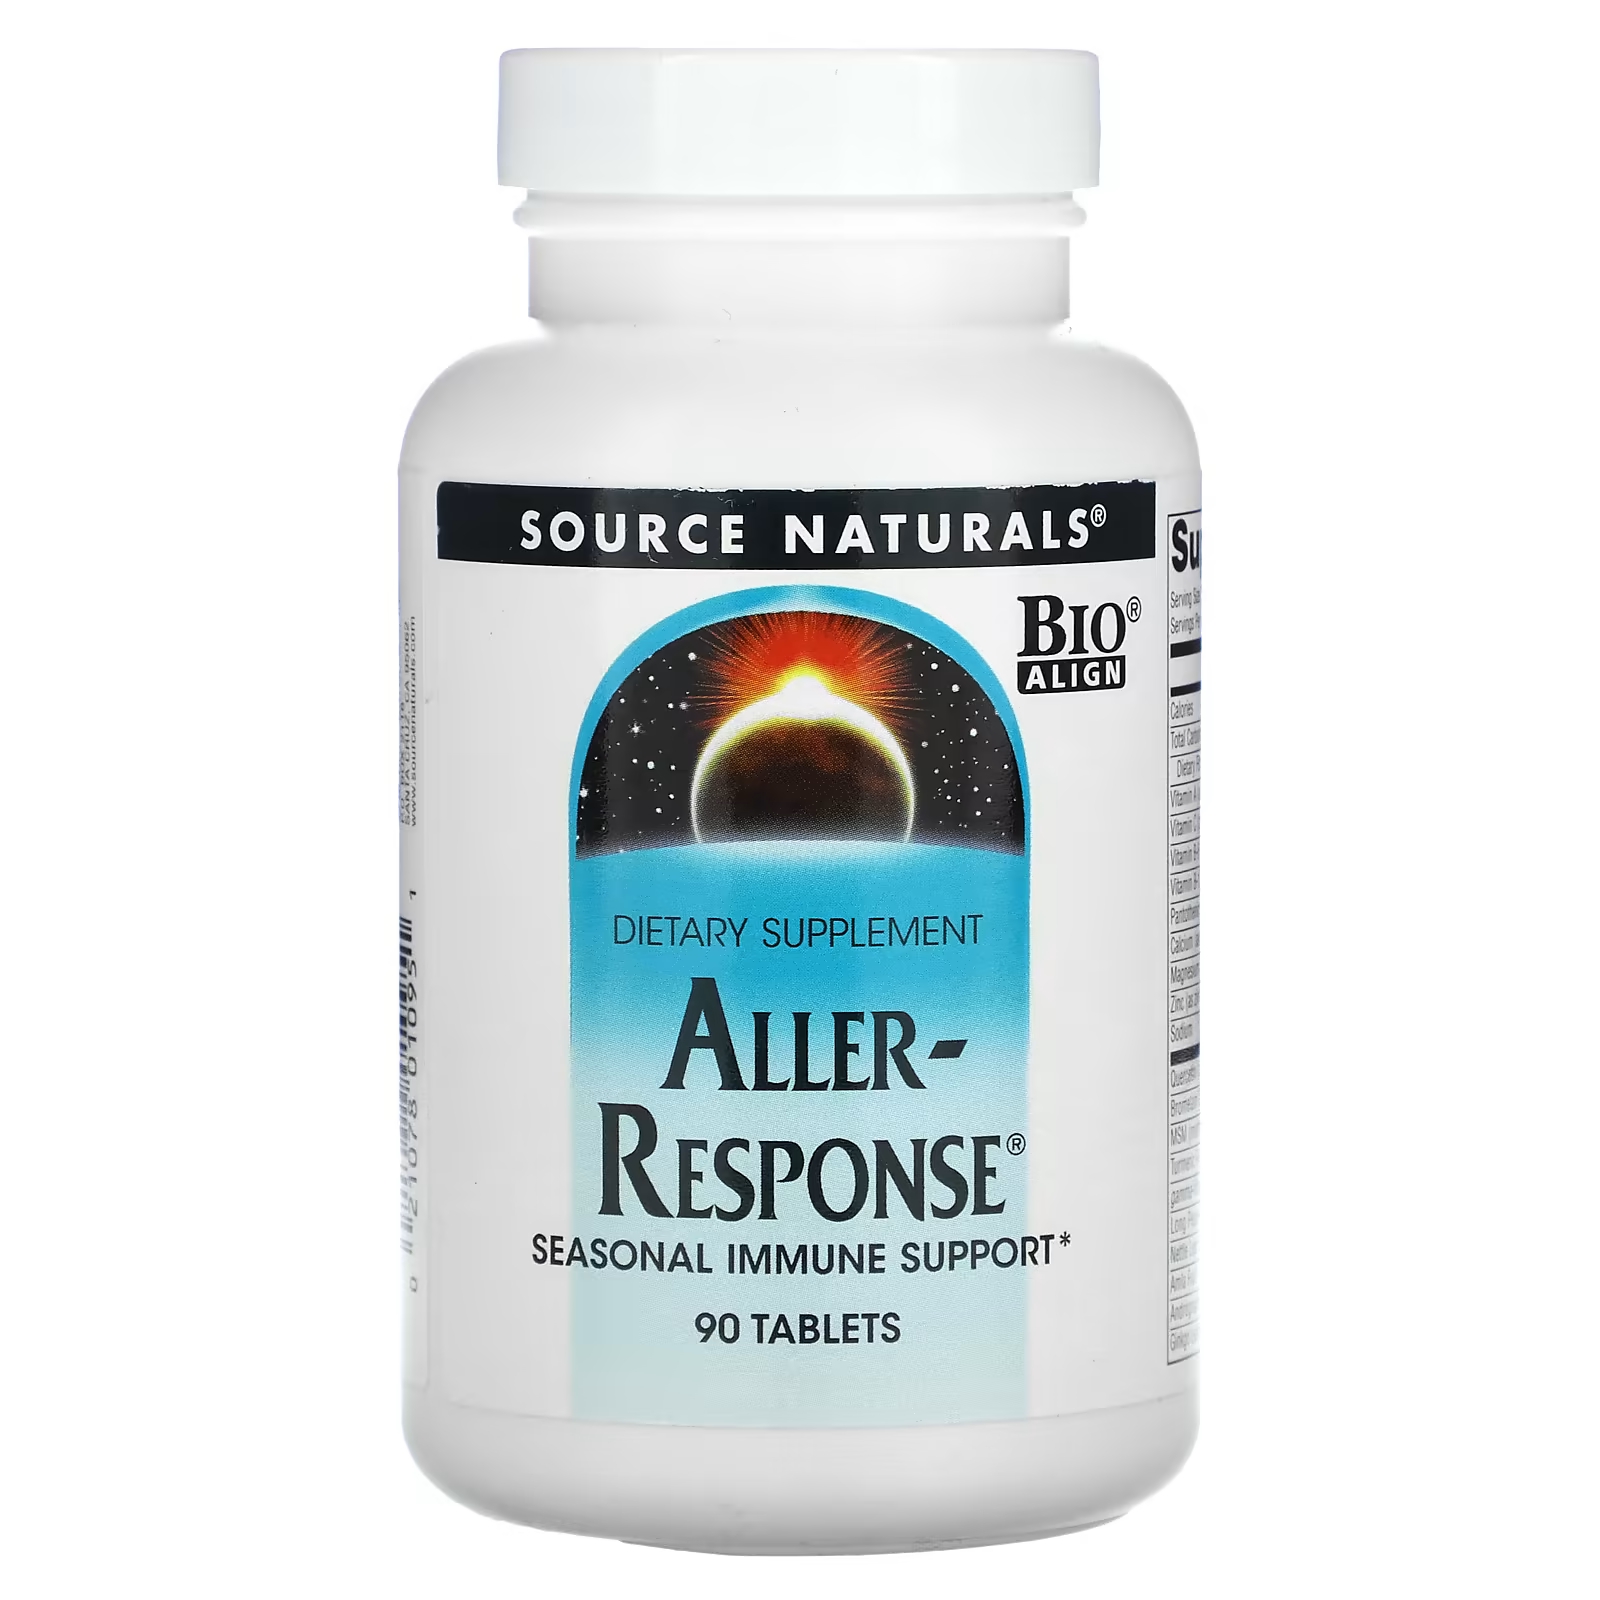 Пищевая добавка Source Naturals Aller-Response, 90 таблеток здоровье легких бронхов и носовых пазух 90 таблеток natural factors